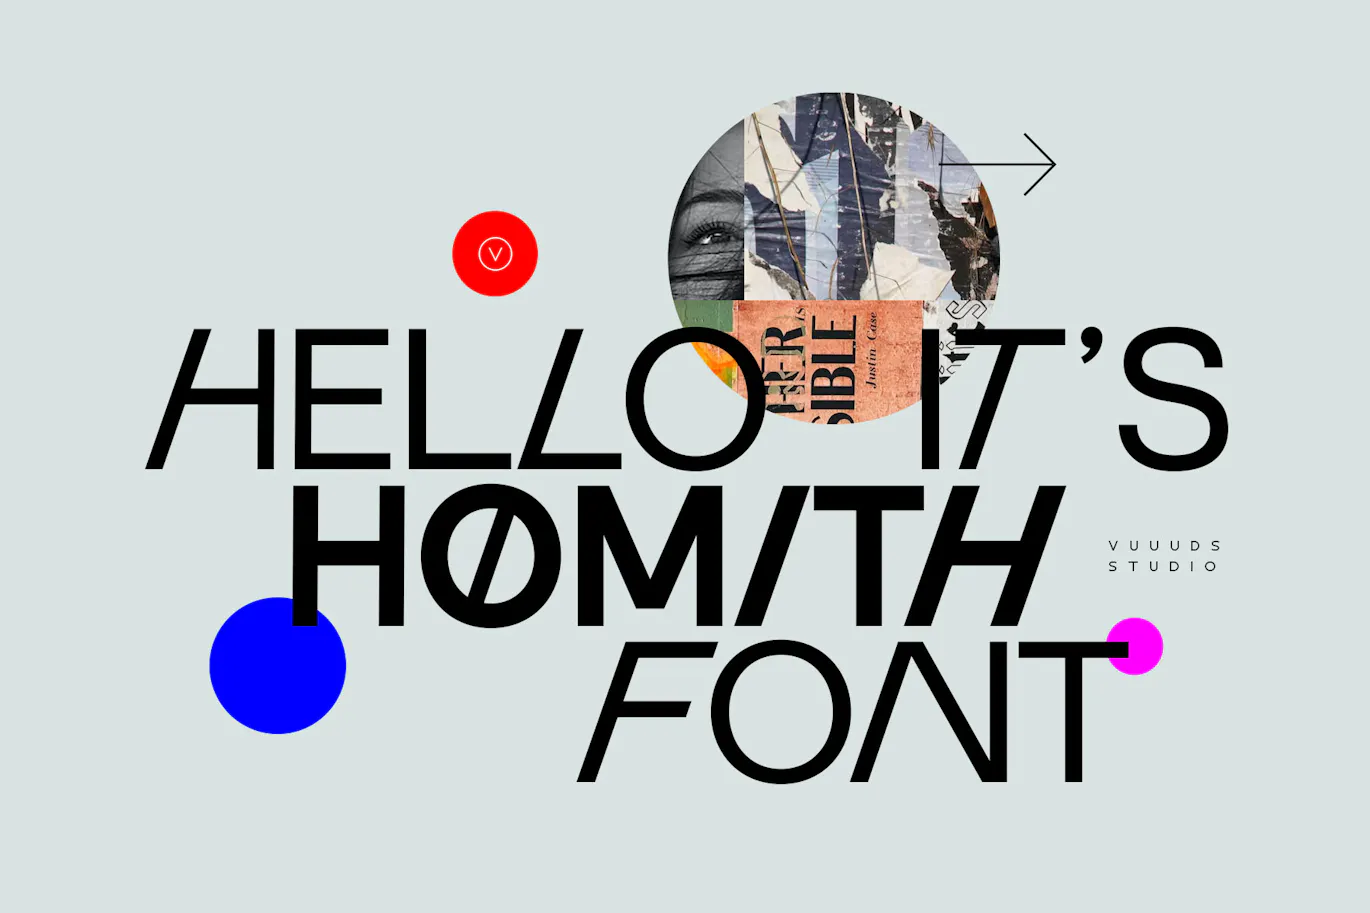 个性斜体效果的英文无衬线字体 - Homith 设计字体 第13张